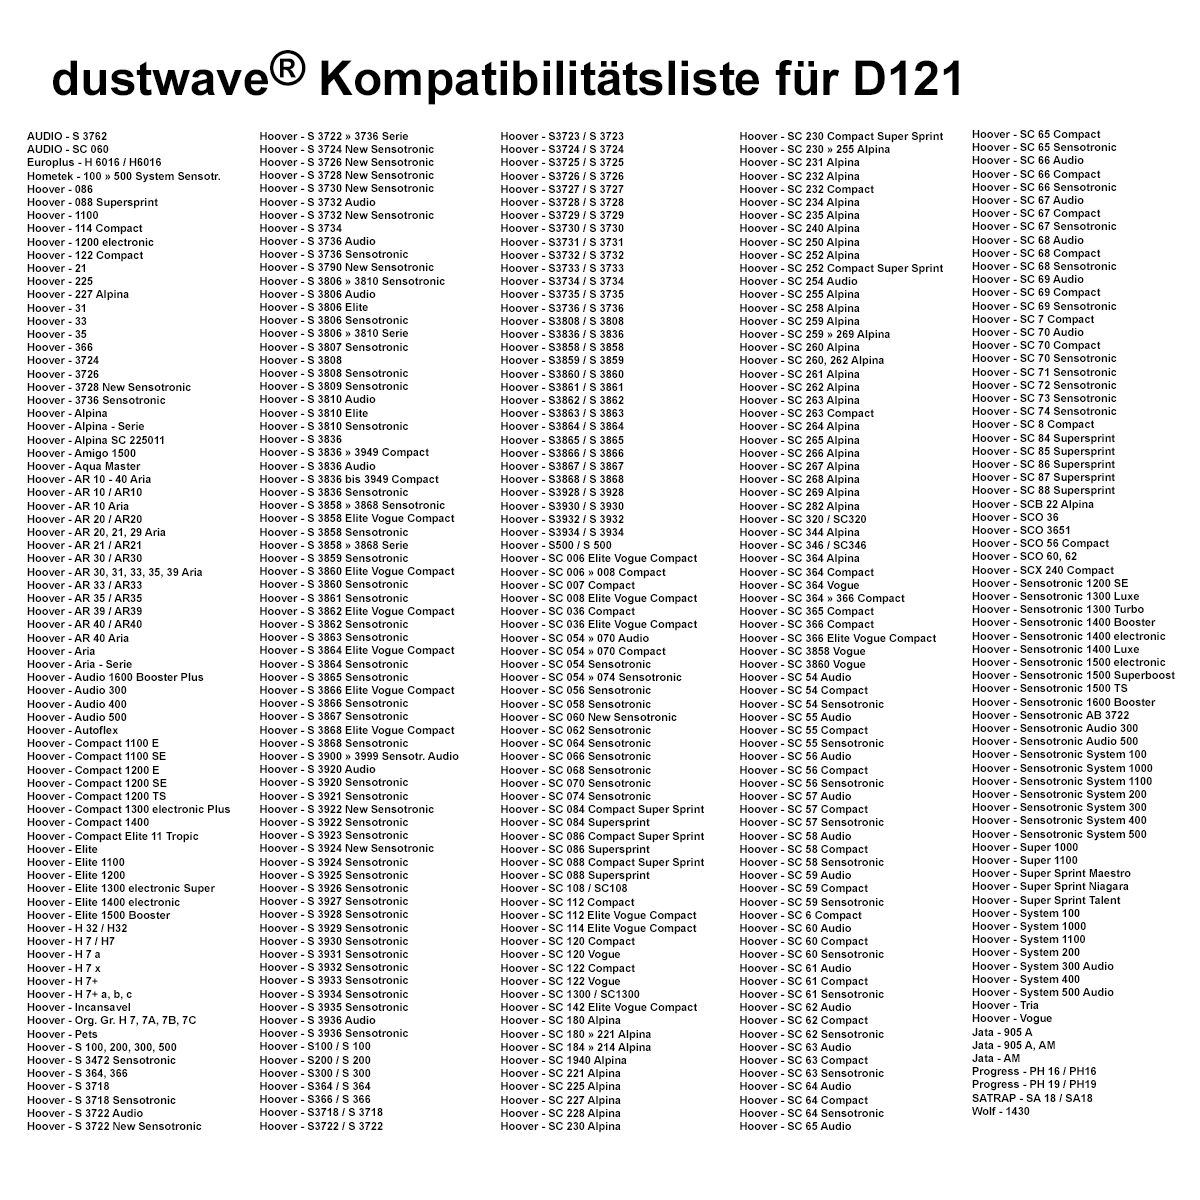 Dustwave® 10 Staubsaugerbeutel für Hoover Compact 1300 electronic Plus - hocheffizient, mehrlagiges Mikrovlies mit Hygieneverschluss - Made in Germany